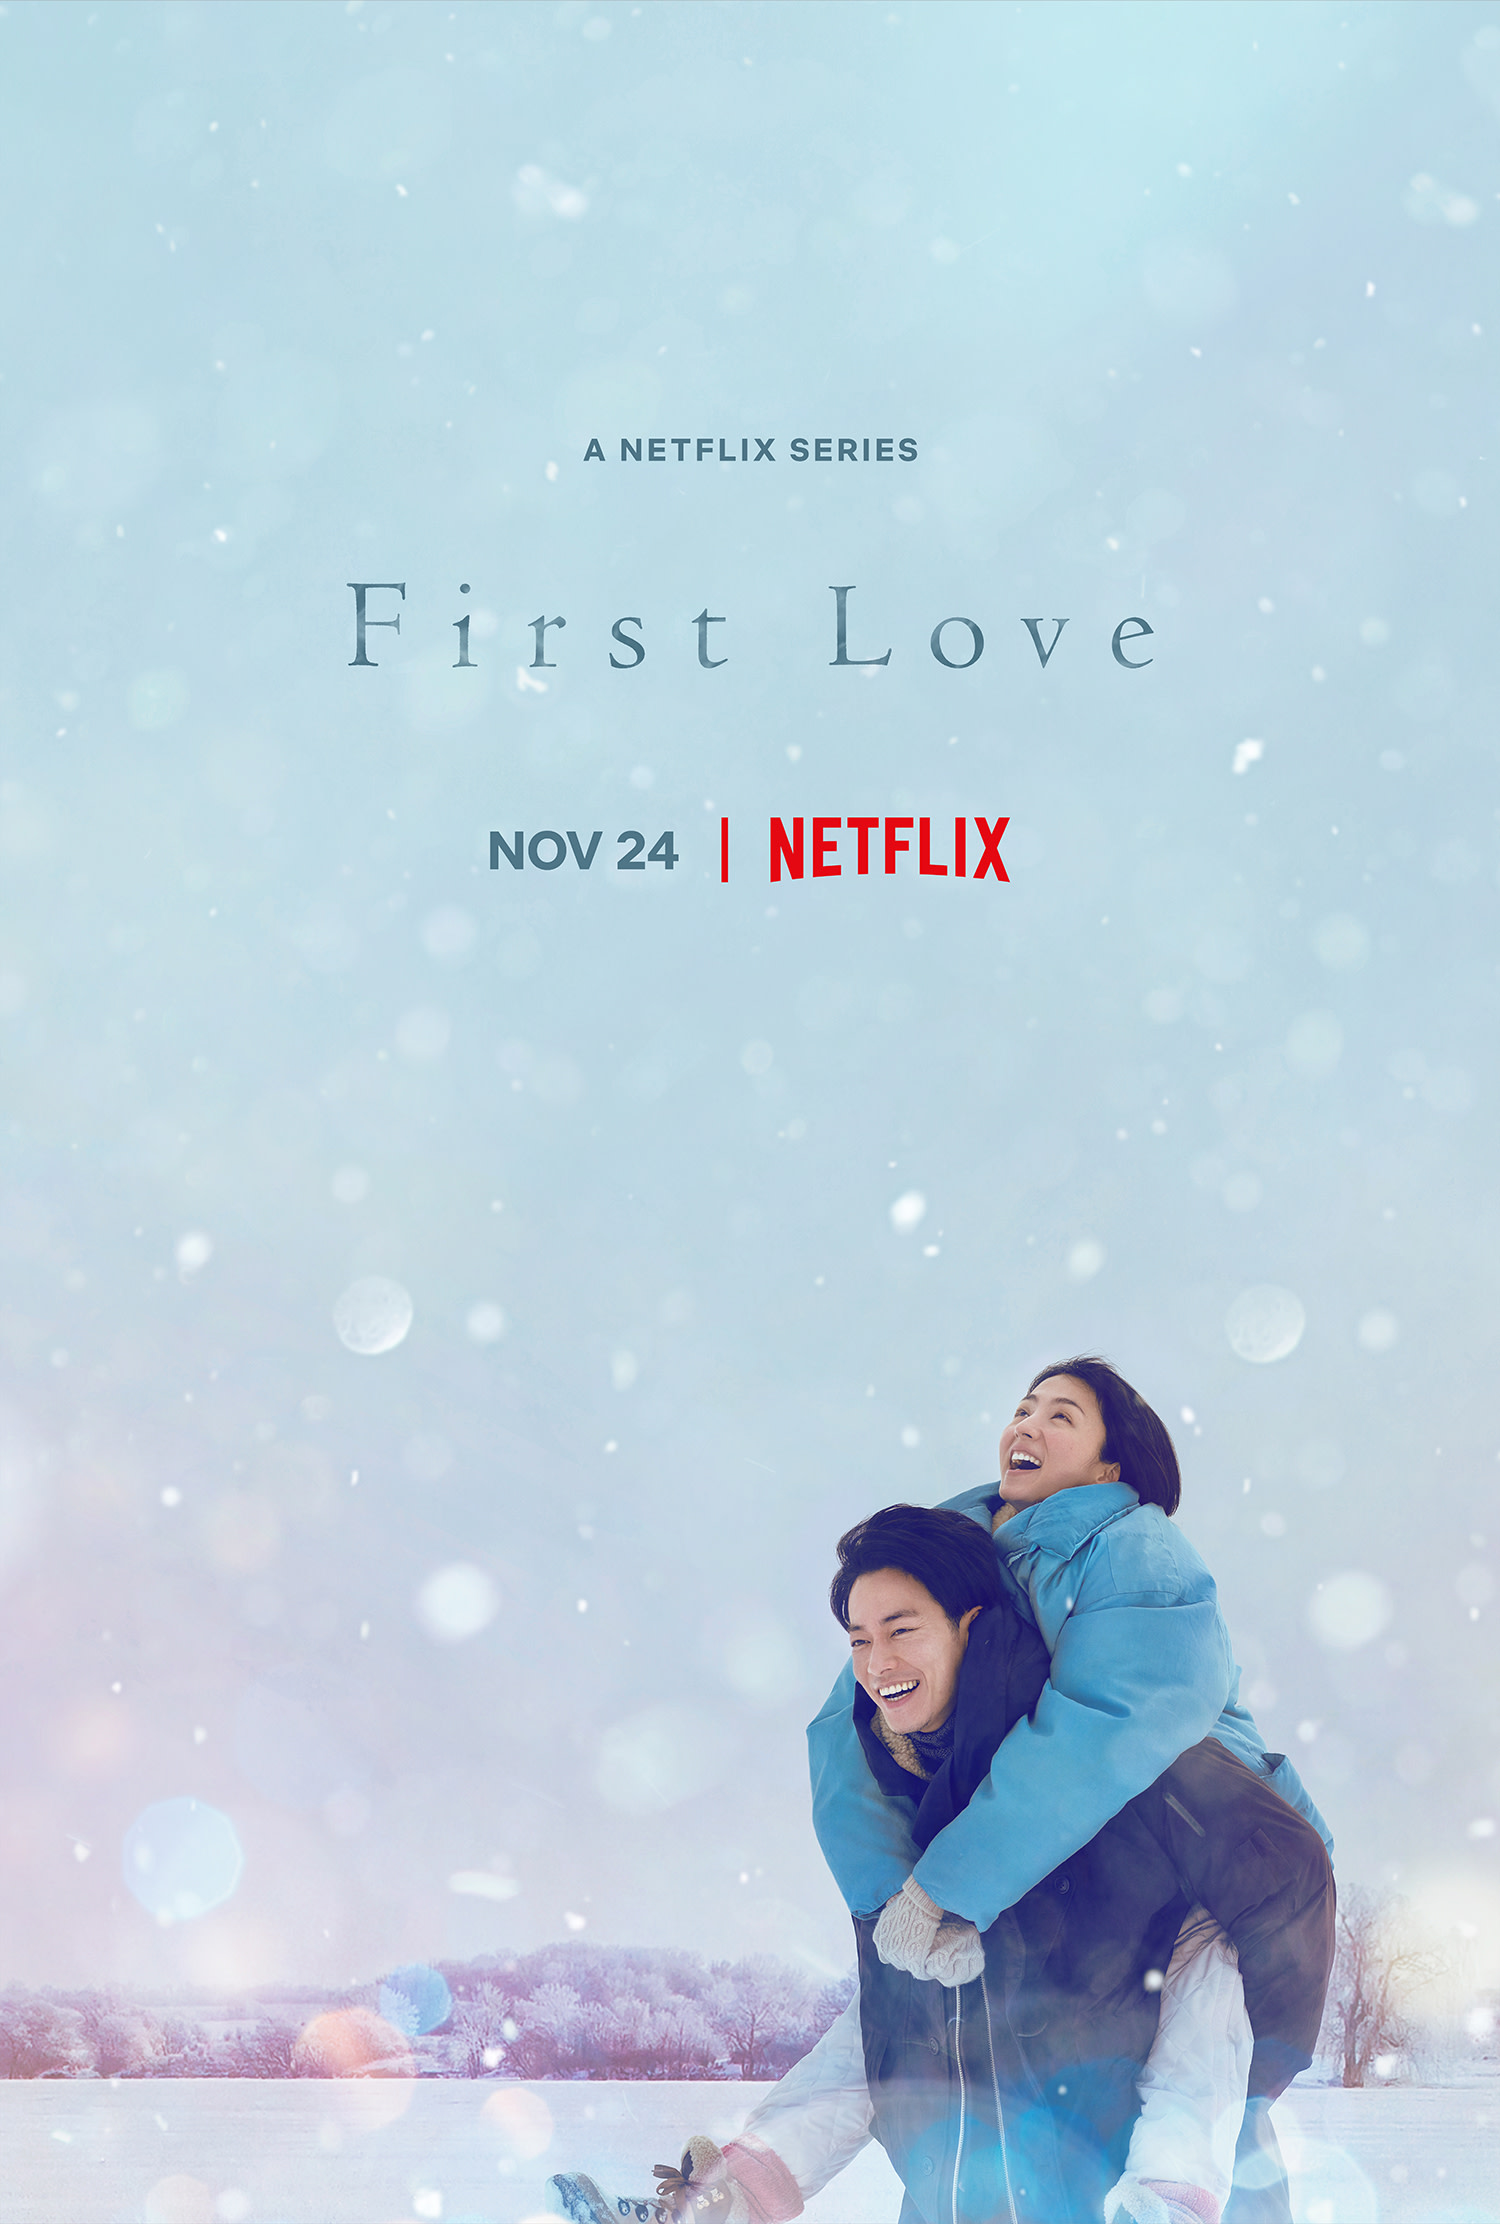 First Love' Super Teaser Art Debut - About Netflix